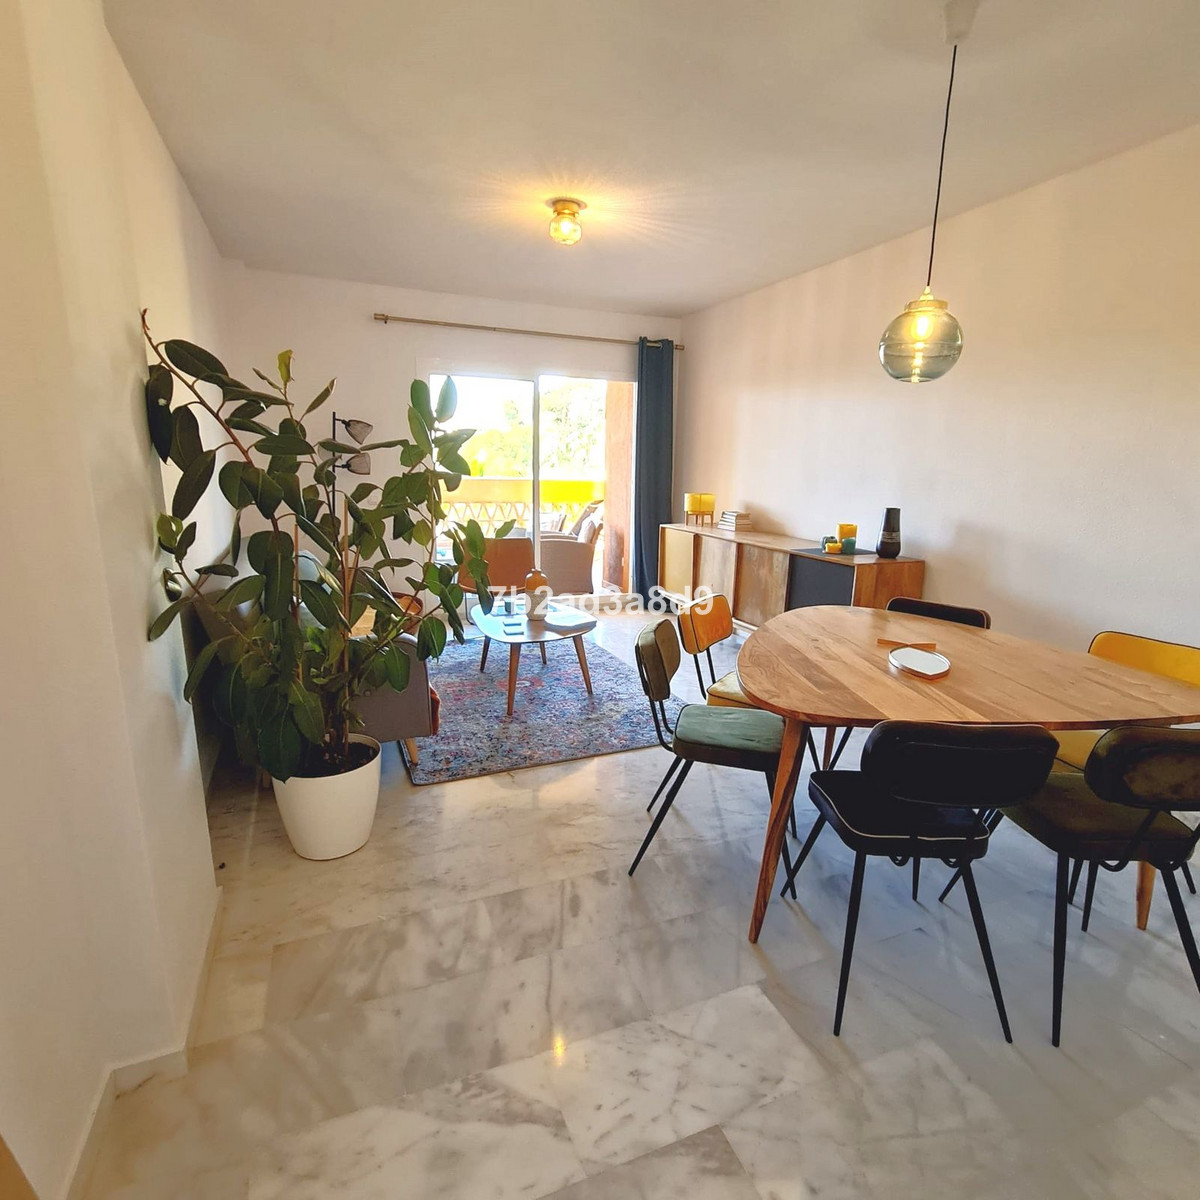 						Apartamento  Planta Media
													en venta 
																			 en Reserva de Marbella
					